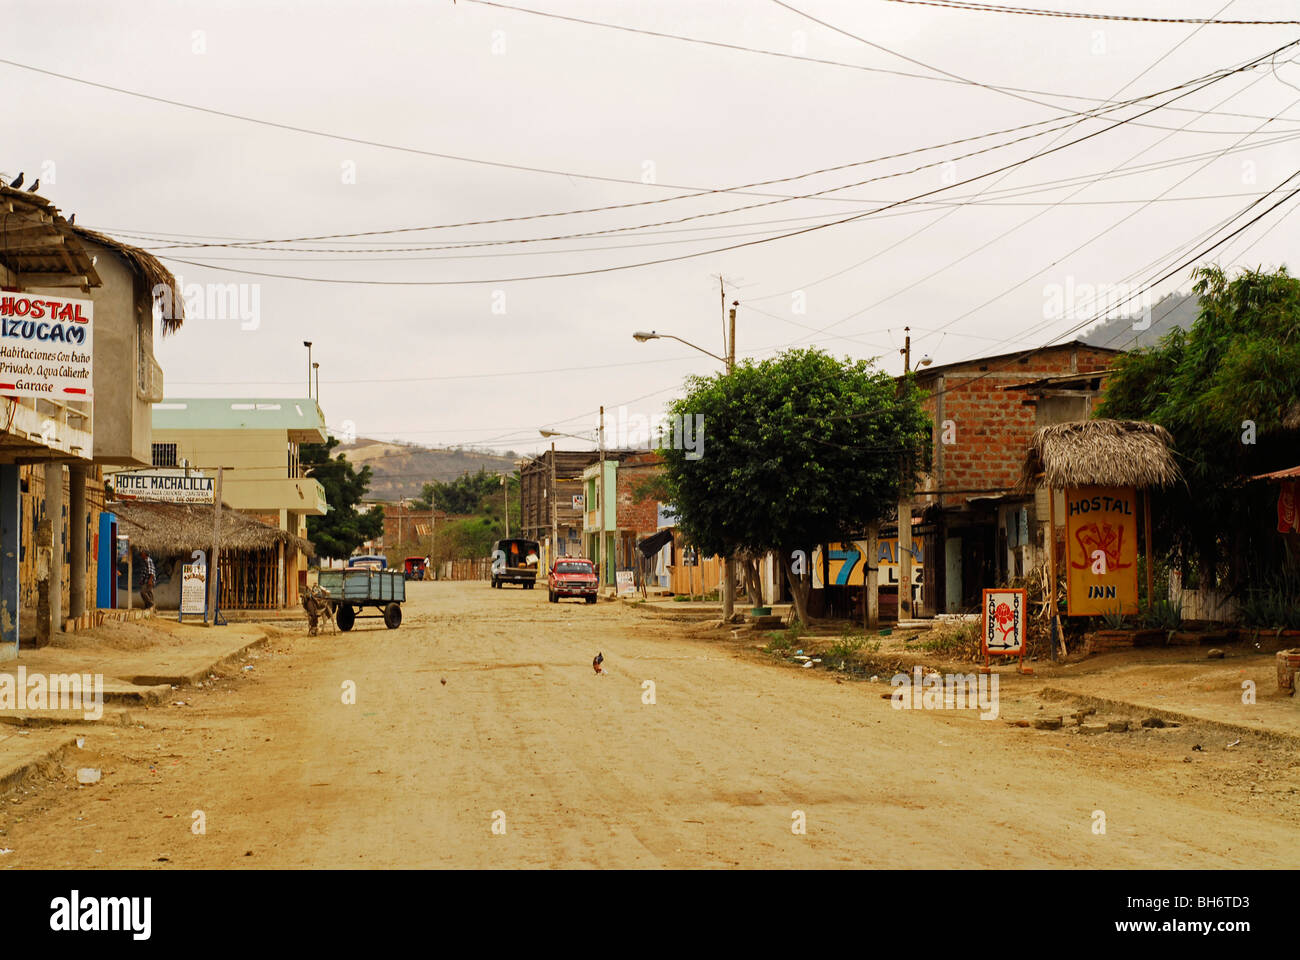 Ecuador, Puerto Lopez, Straßenszene mit einer staubigen Straße und einige hölzerne Läden auf der einen Seite der Straße und andere Häuser o Stockfoto